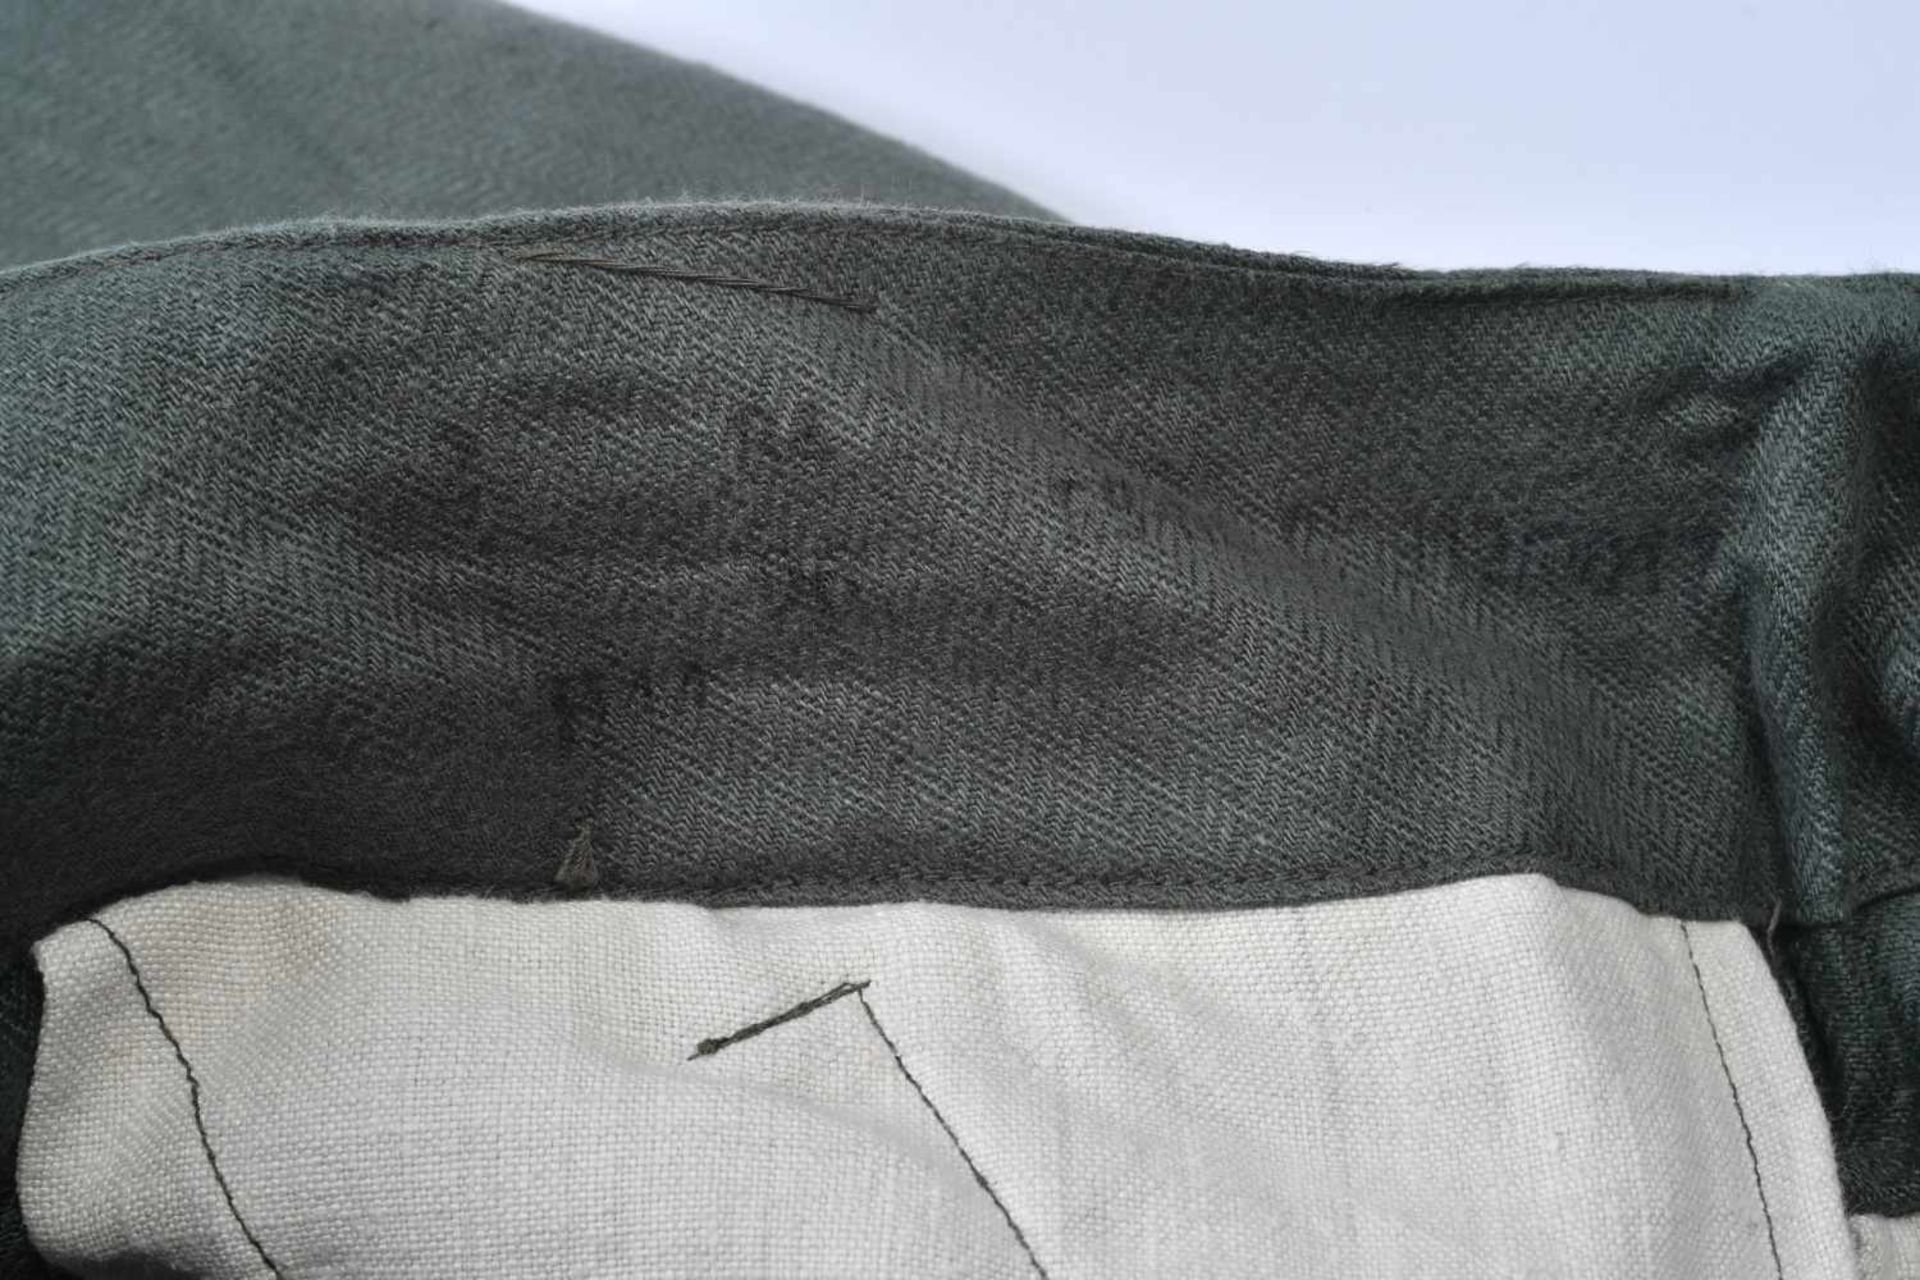 Pantalon de treillis En tissu coton type treillis roseau, tous les boutons sont présents. - Image 2 of 4